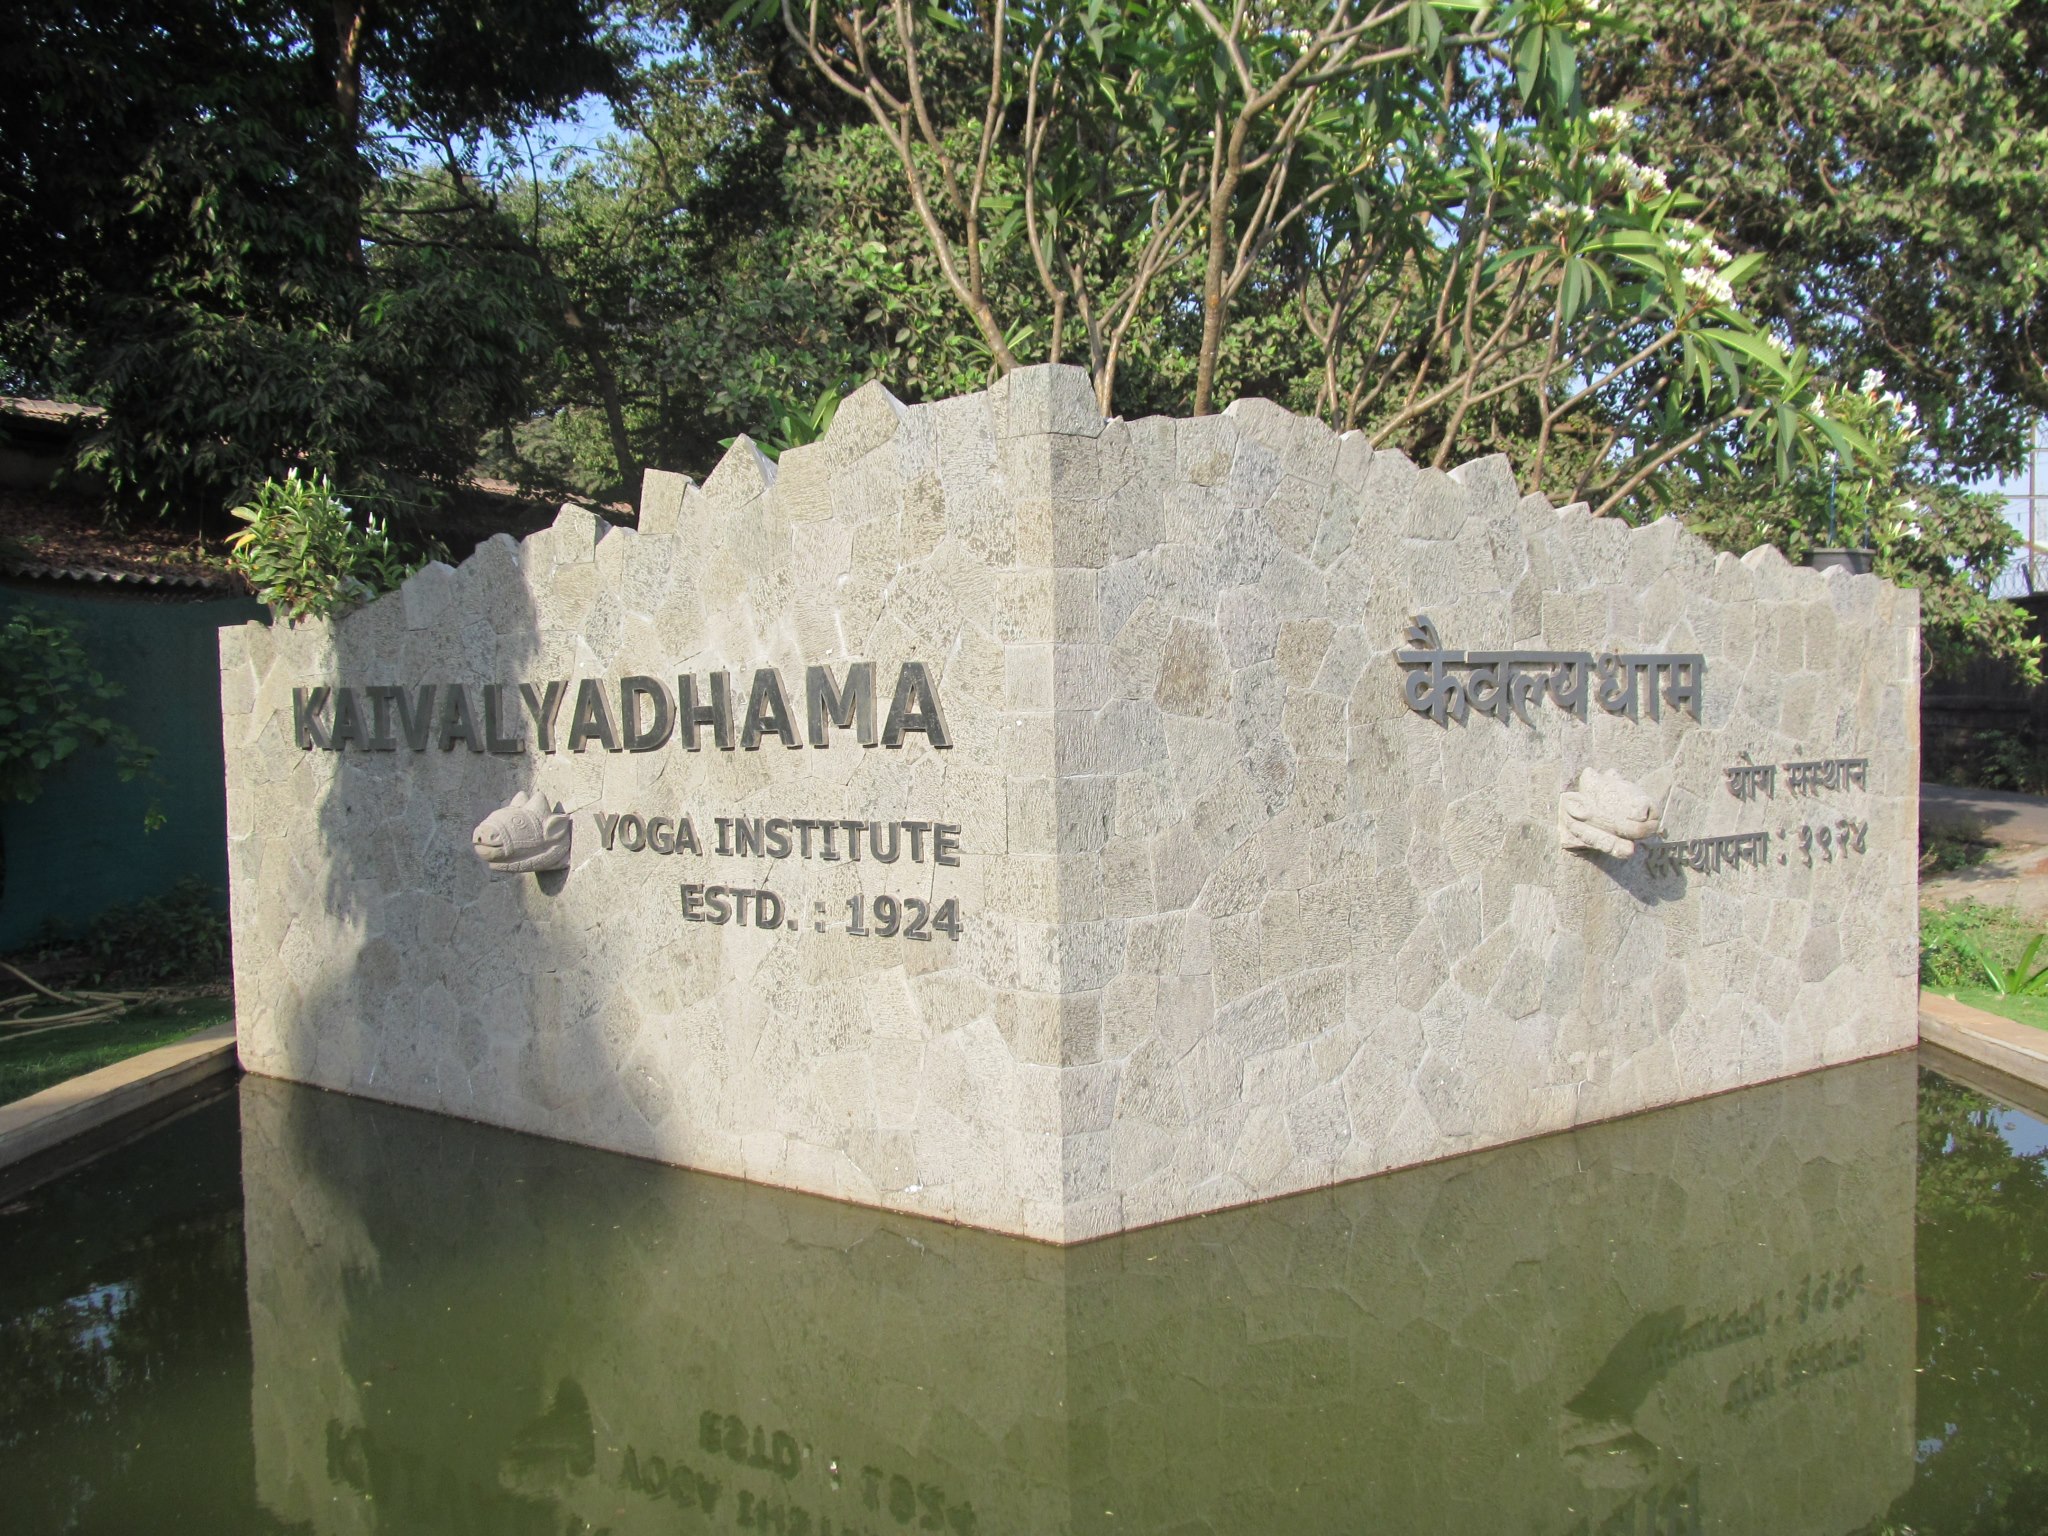 Kaivalya Dham Yoga And Ayurveda Institute Lonavala